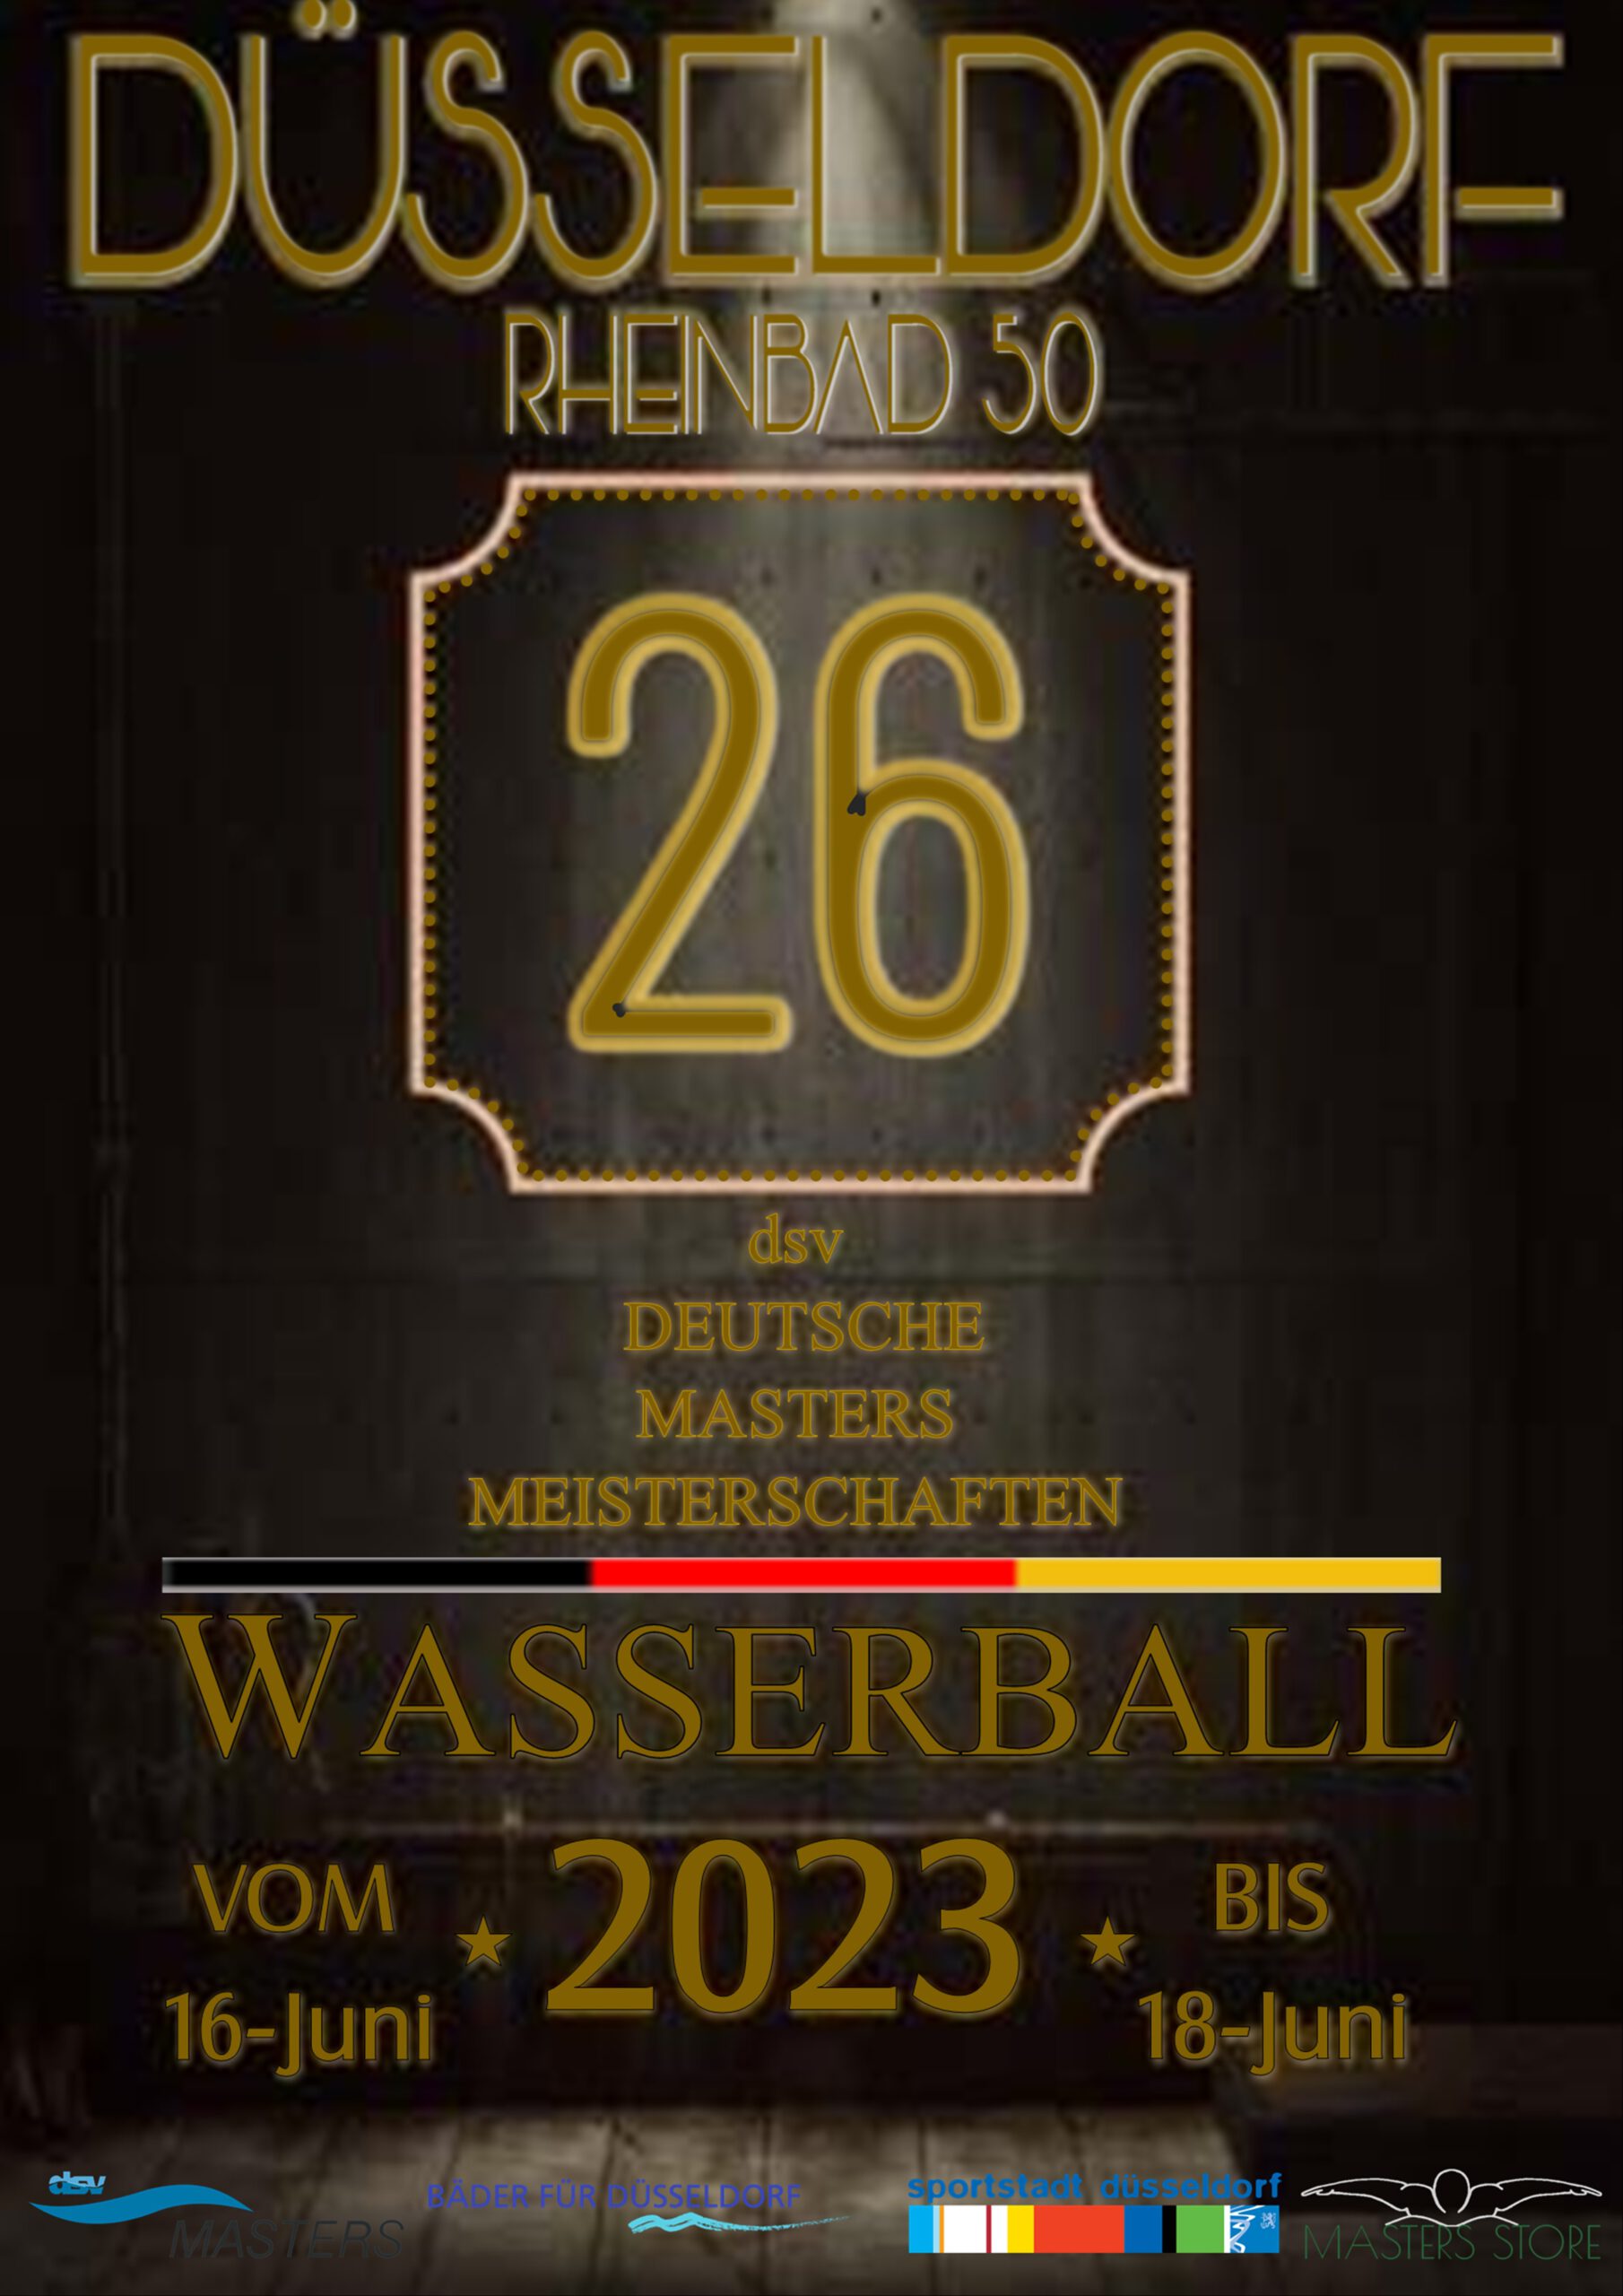 26. DEUTSCHE WASSERBALL MASTERS MEISTERSCHAFT